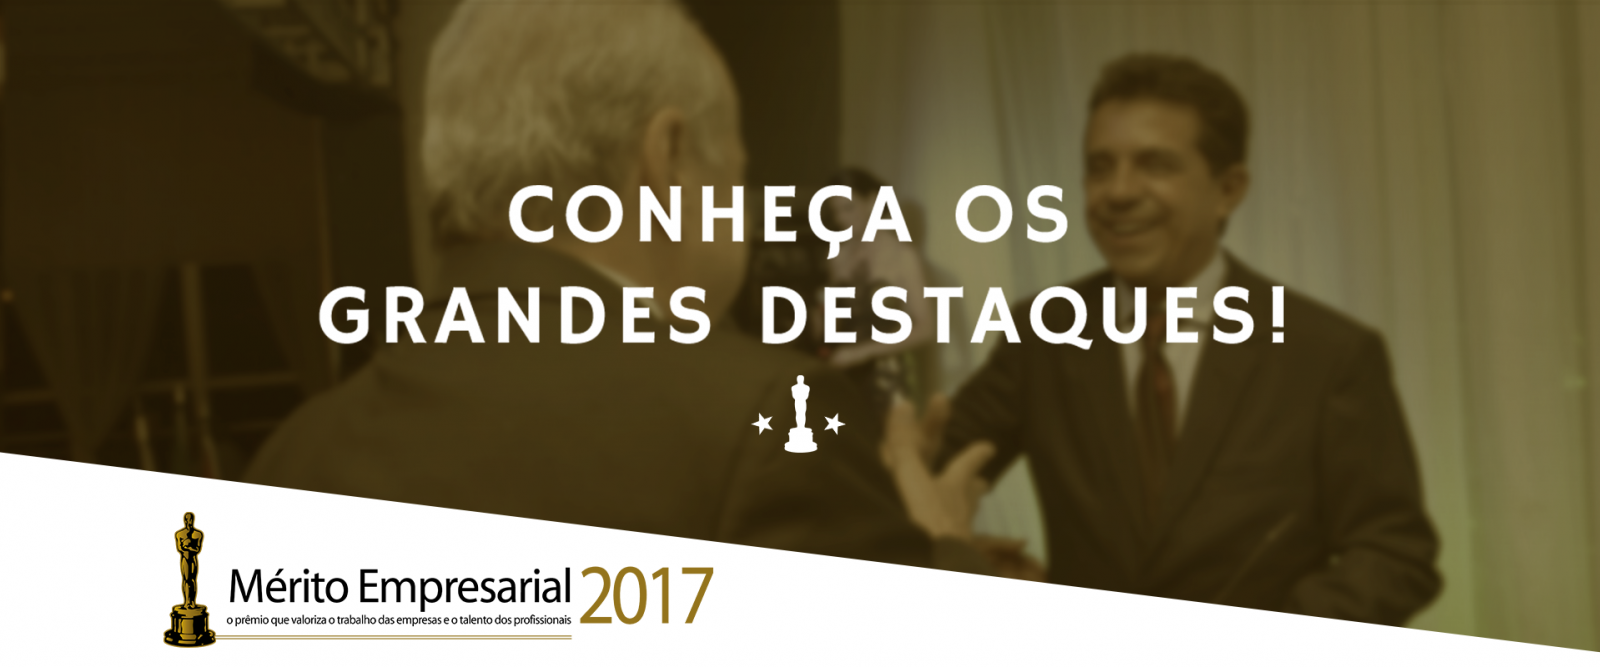 Mérito Empresarial 2017: Conheça os Destaques!